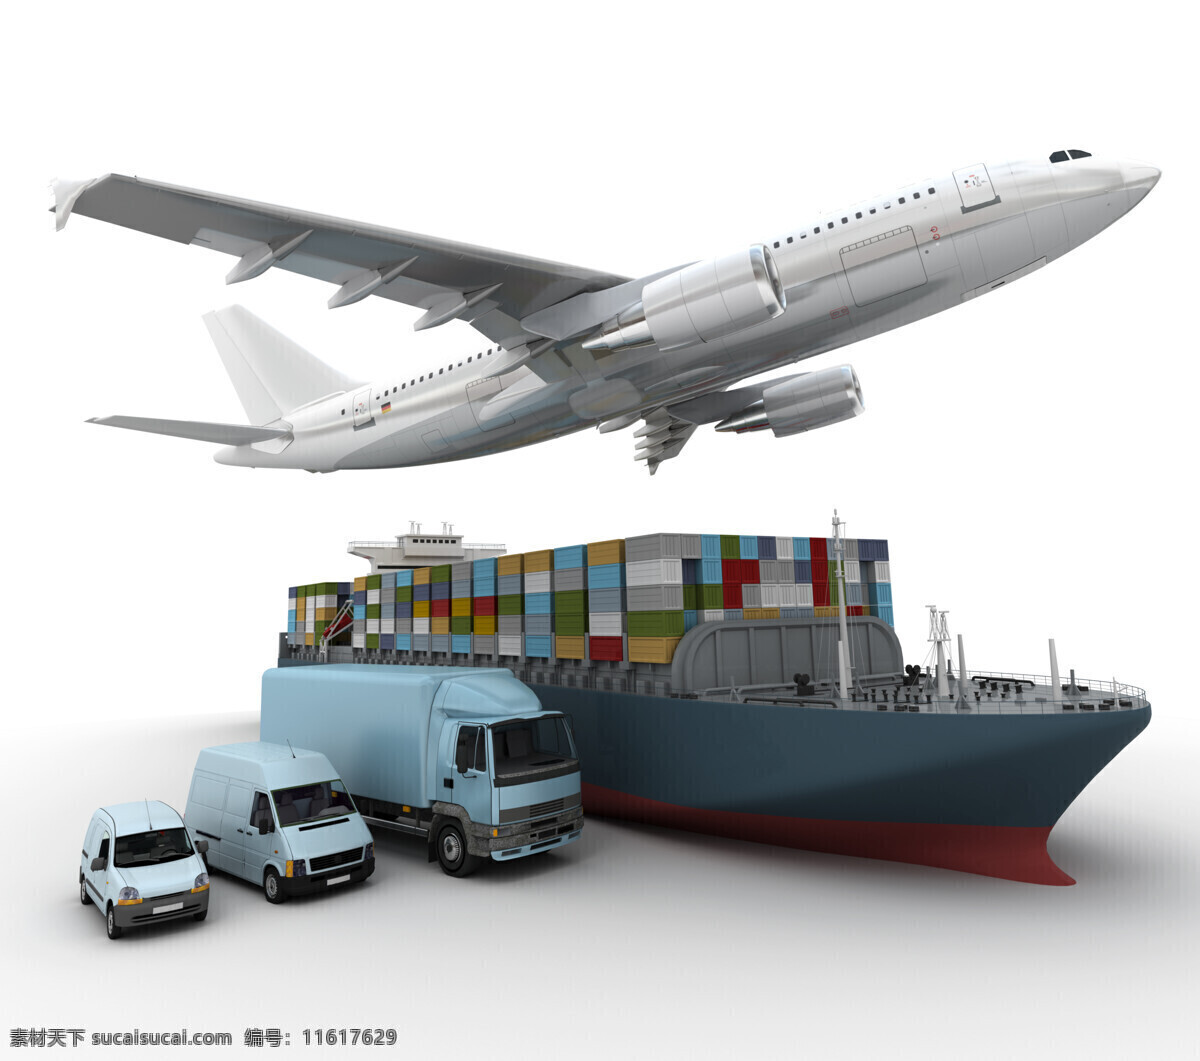 货物运输 设备 飞机 客机 汽车 卡车 货车 轮船 货船 交通工具 汽车图片 现代科技